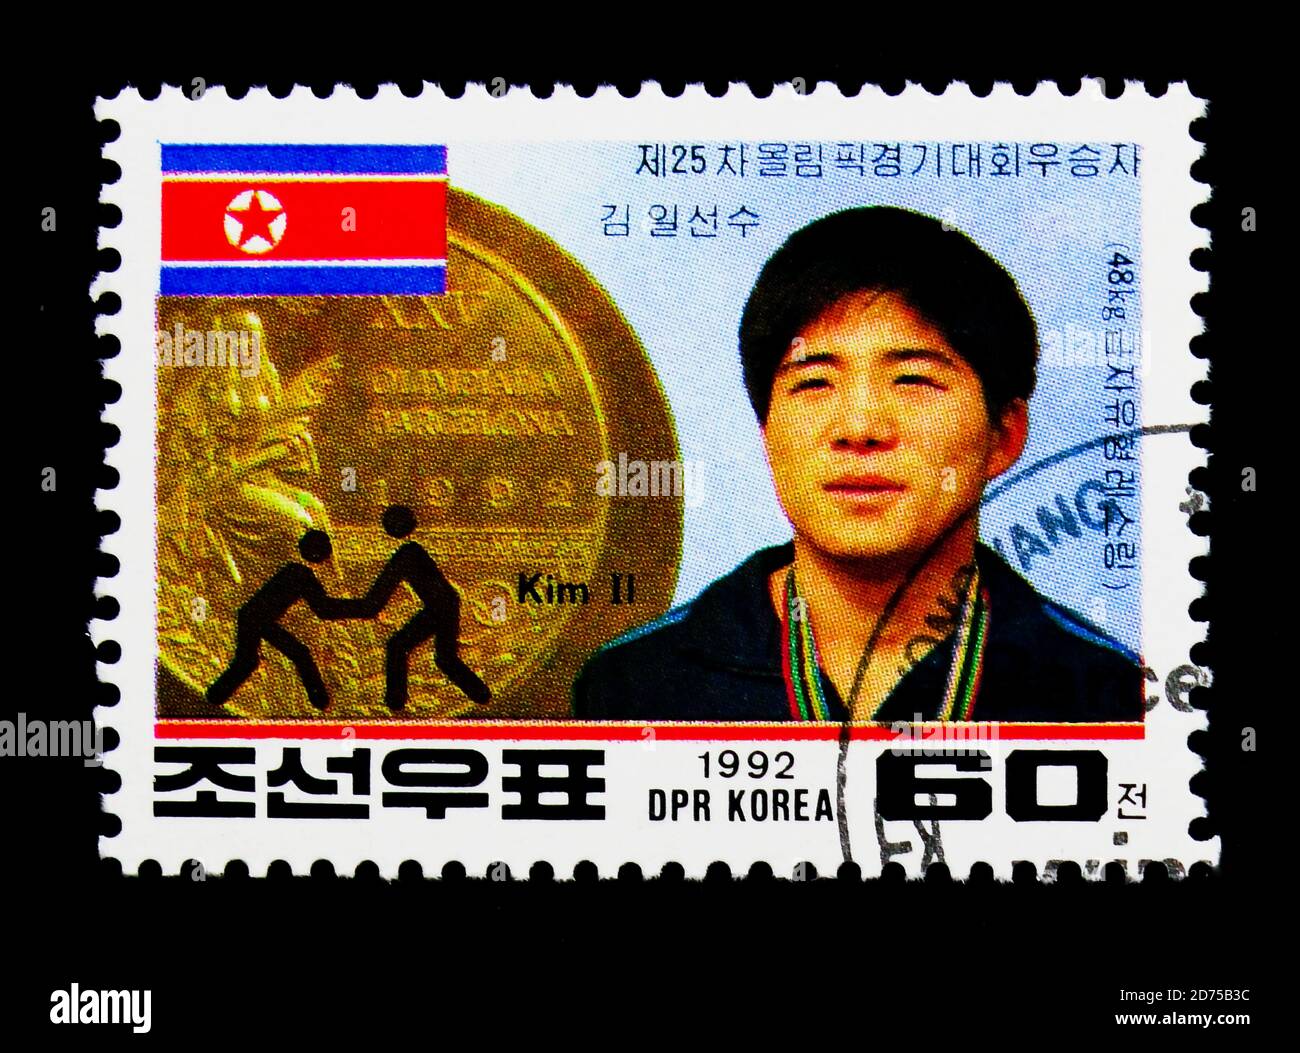 MOSCOU, RUSSIE - 25 NOVEMBRE 2017 : un timbre imprimé en république populaire démocratique de Corée montre la médaille d'or nord-coréenne - Barcelona Olympic Banque D'Images